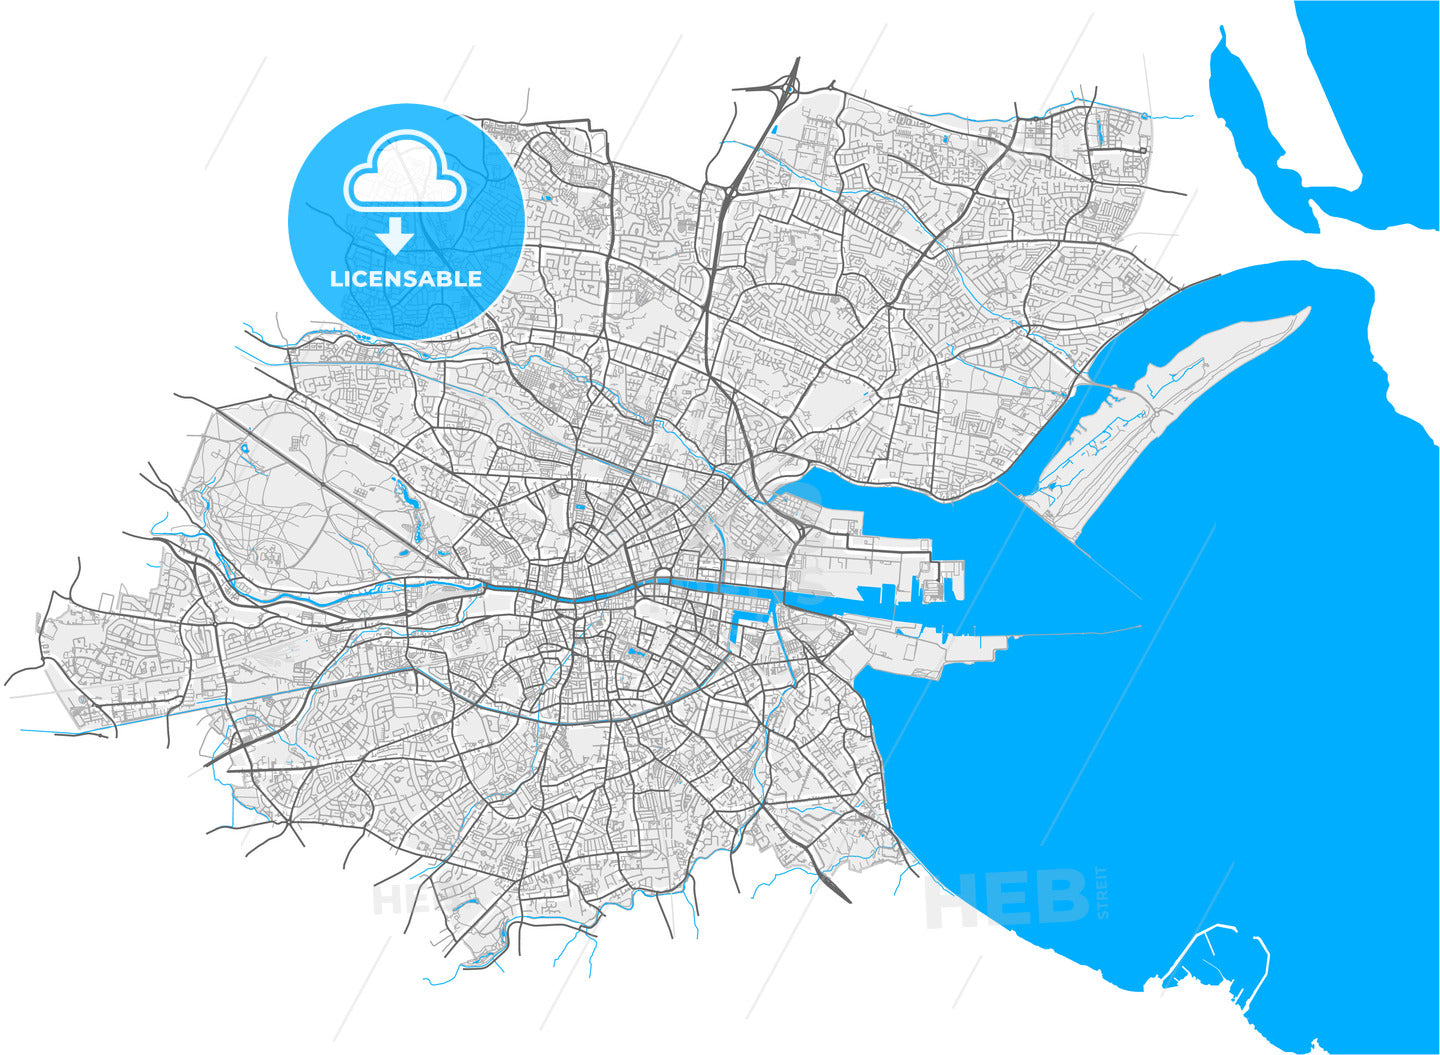 Dublin, County Dublin, Ireland, high quality vector map